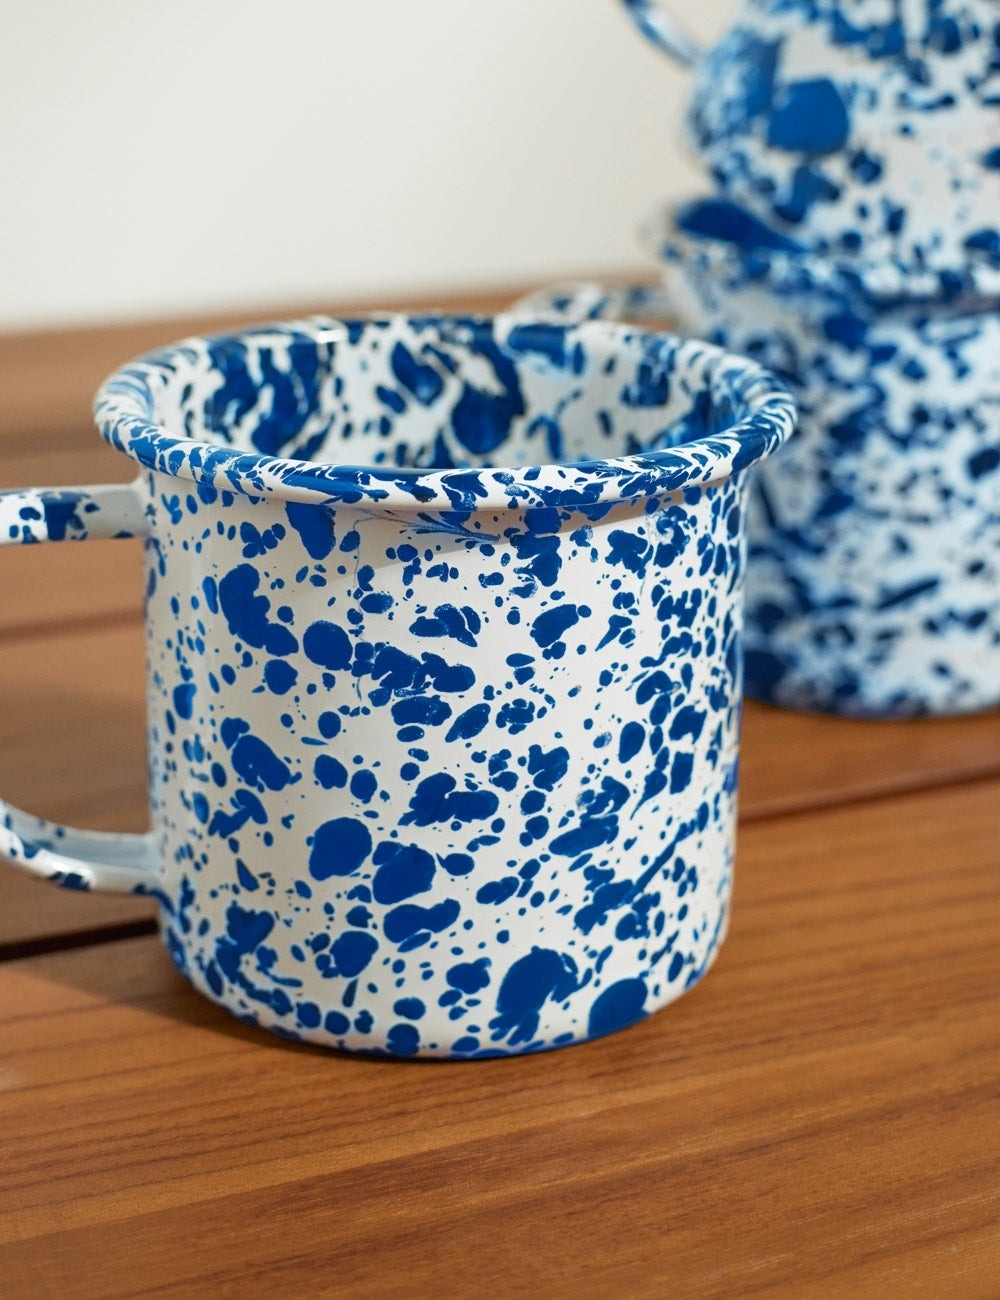 close up of the blue splattered mug